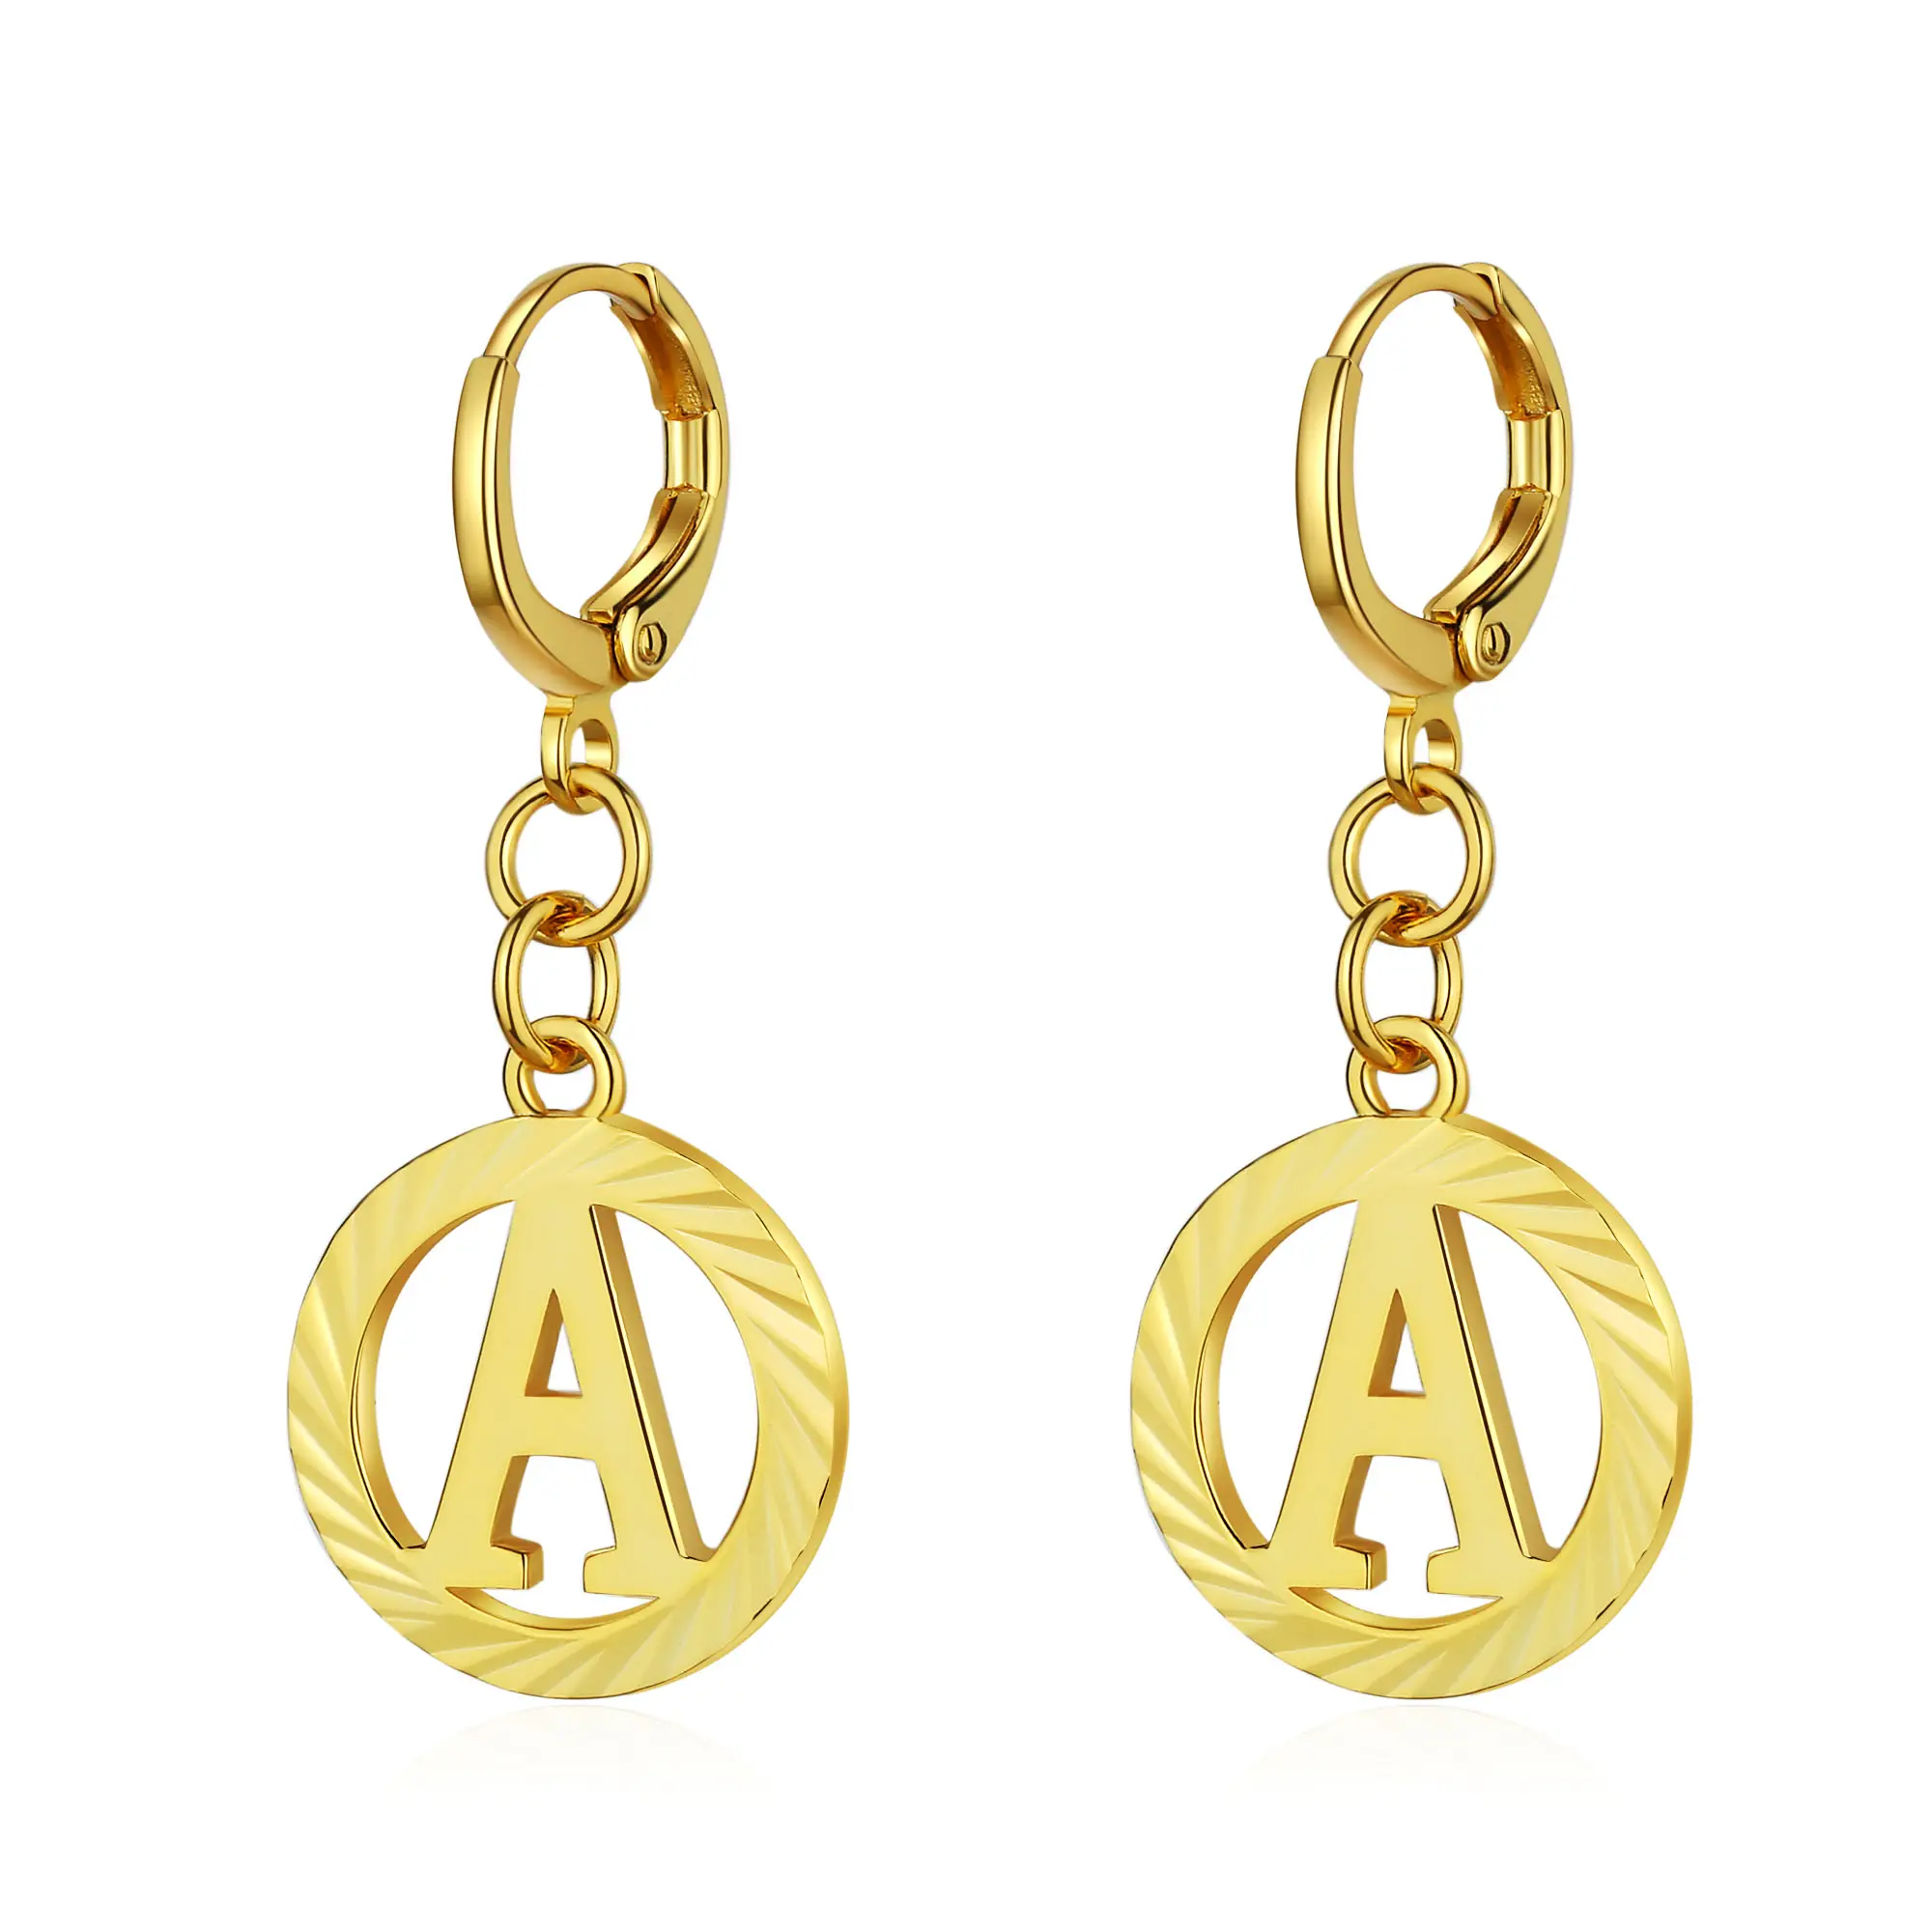 18K Gold Plated Personalized Custom Initial Letter Hoop Earrings Jewelry Women Girls Fashion Hoop Earrings